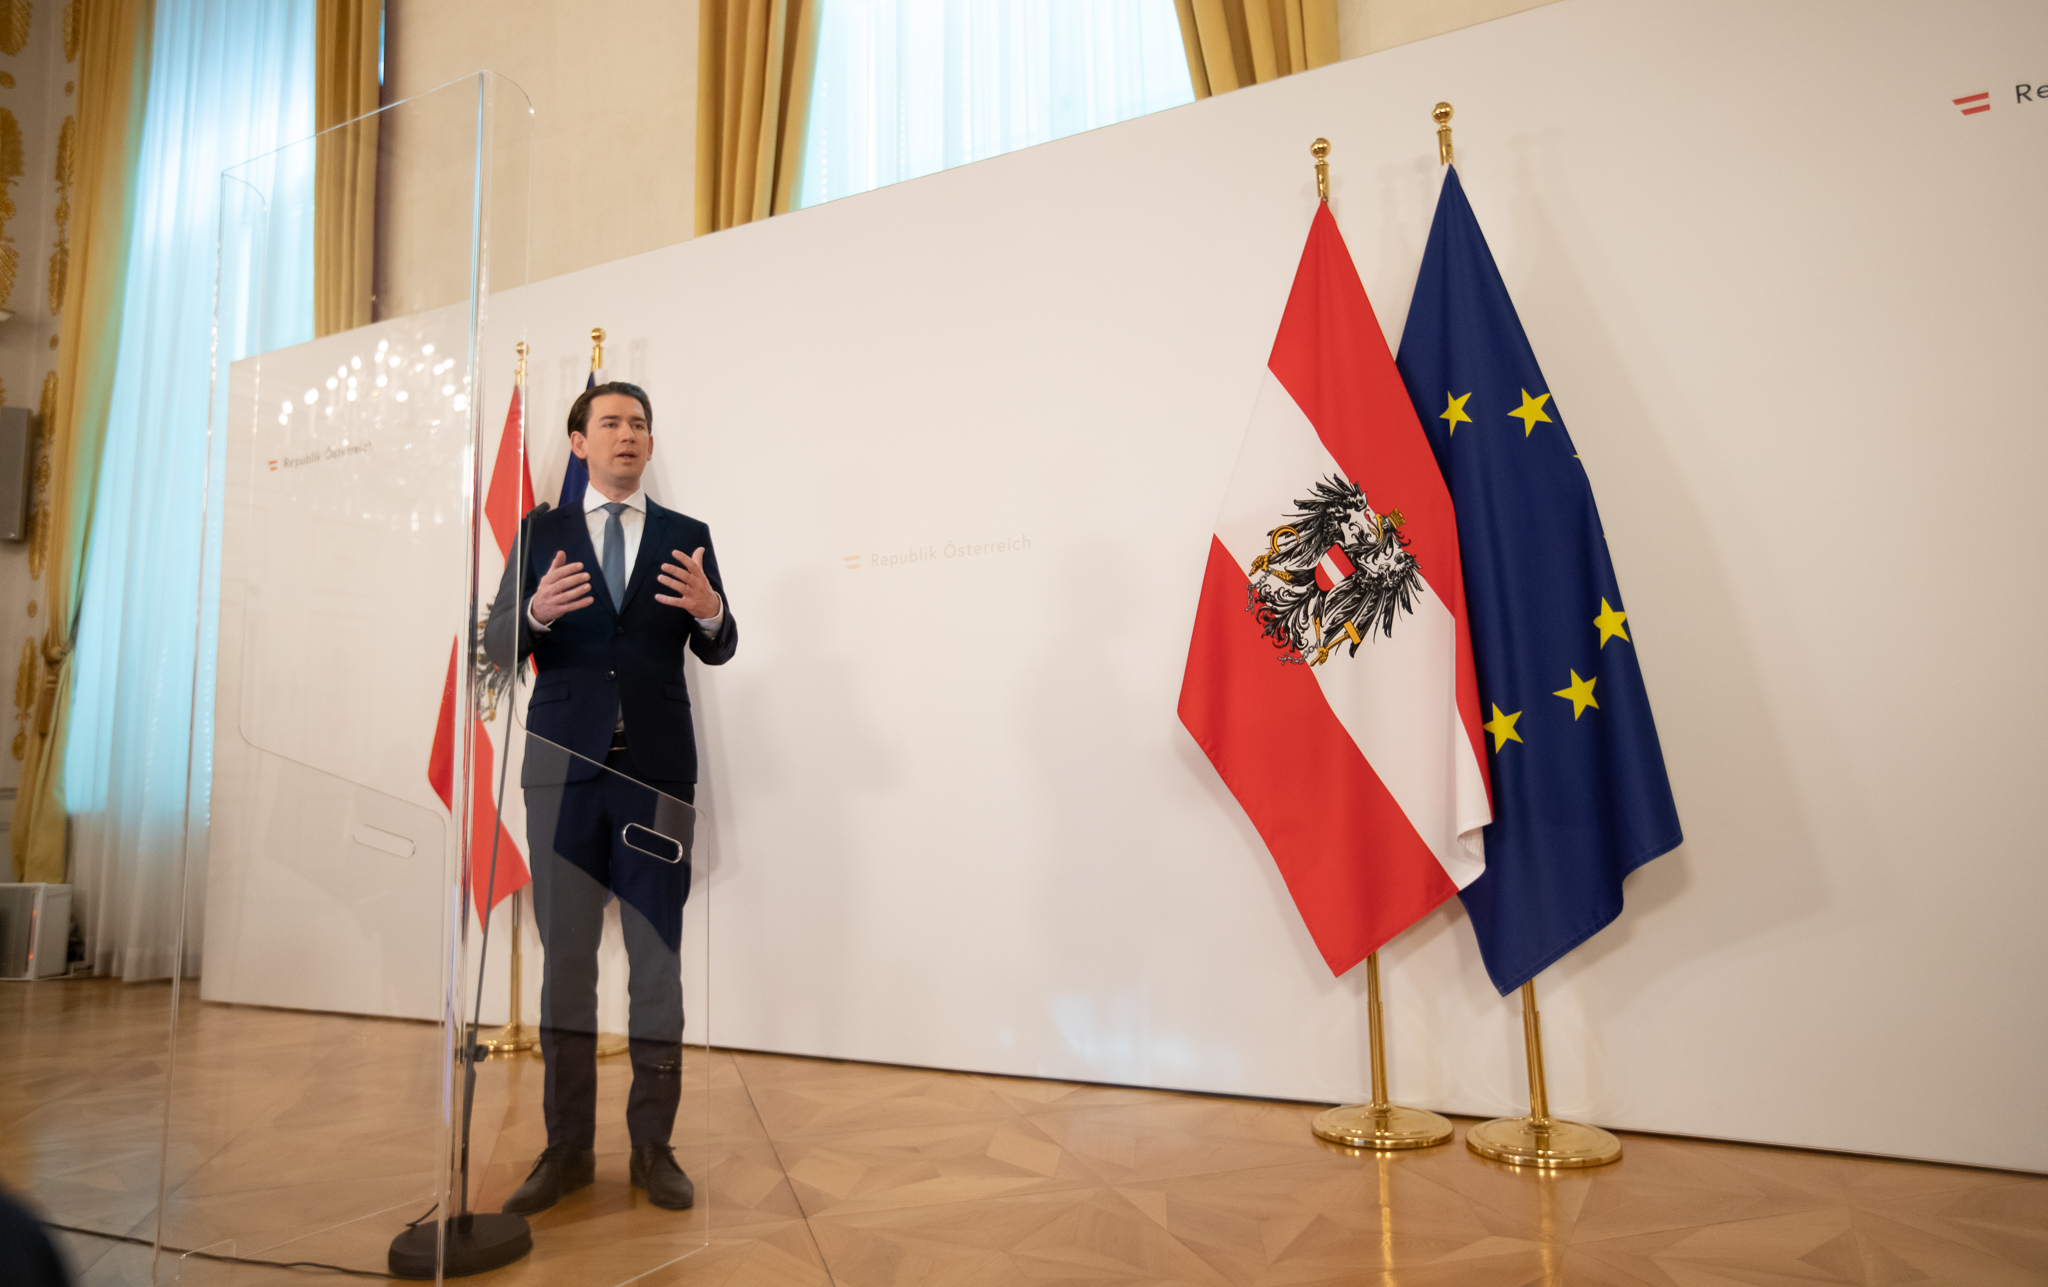 RASPODJELA CJEPIVA U EU: Austrija za kompenzaciju manjka cjepiva Hrvatskoj i Češkoj